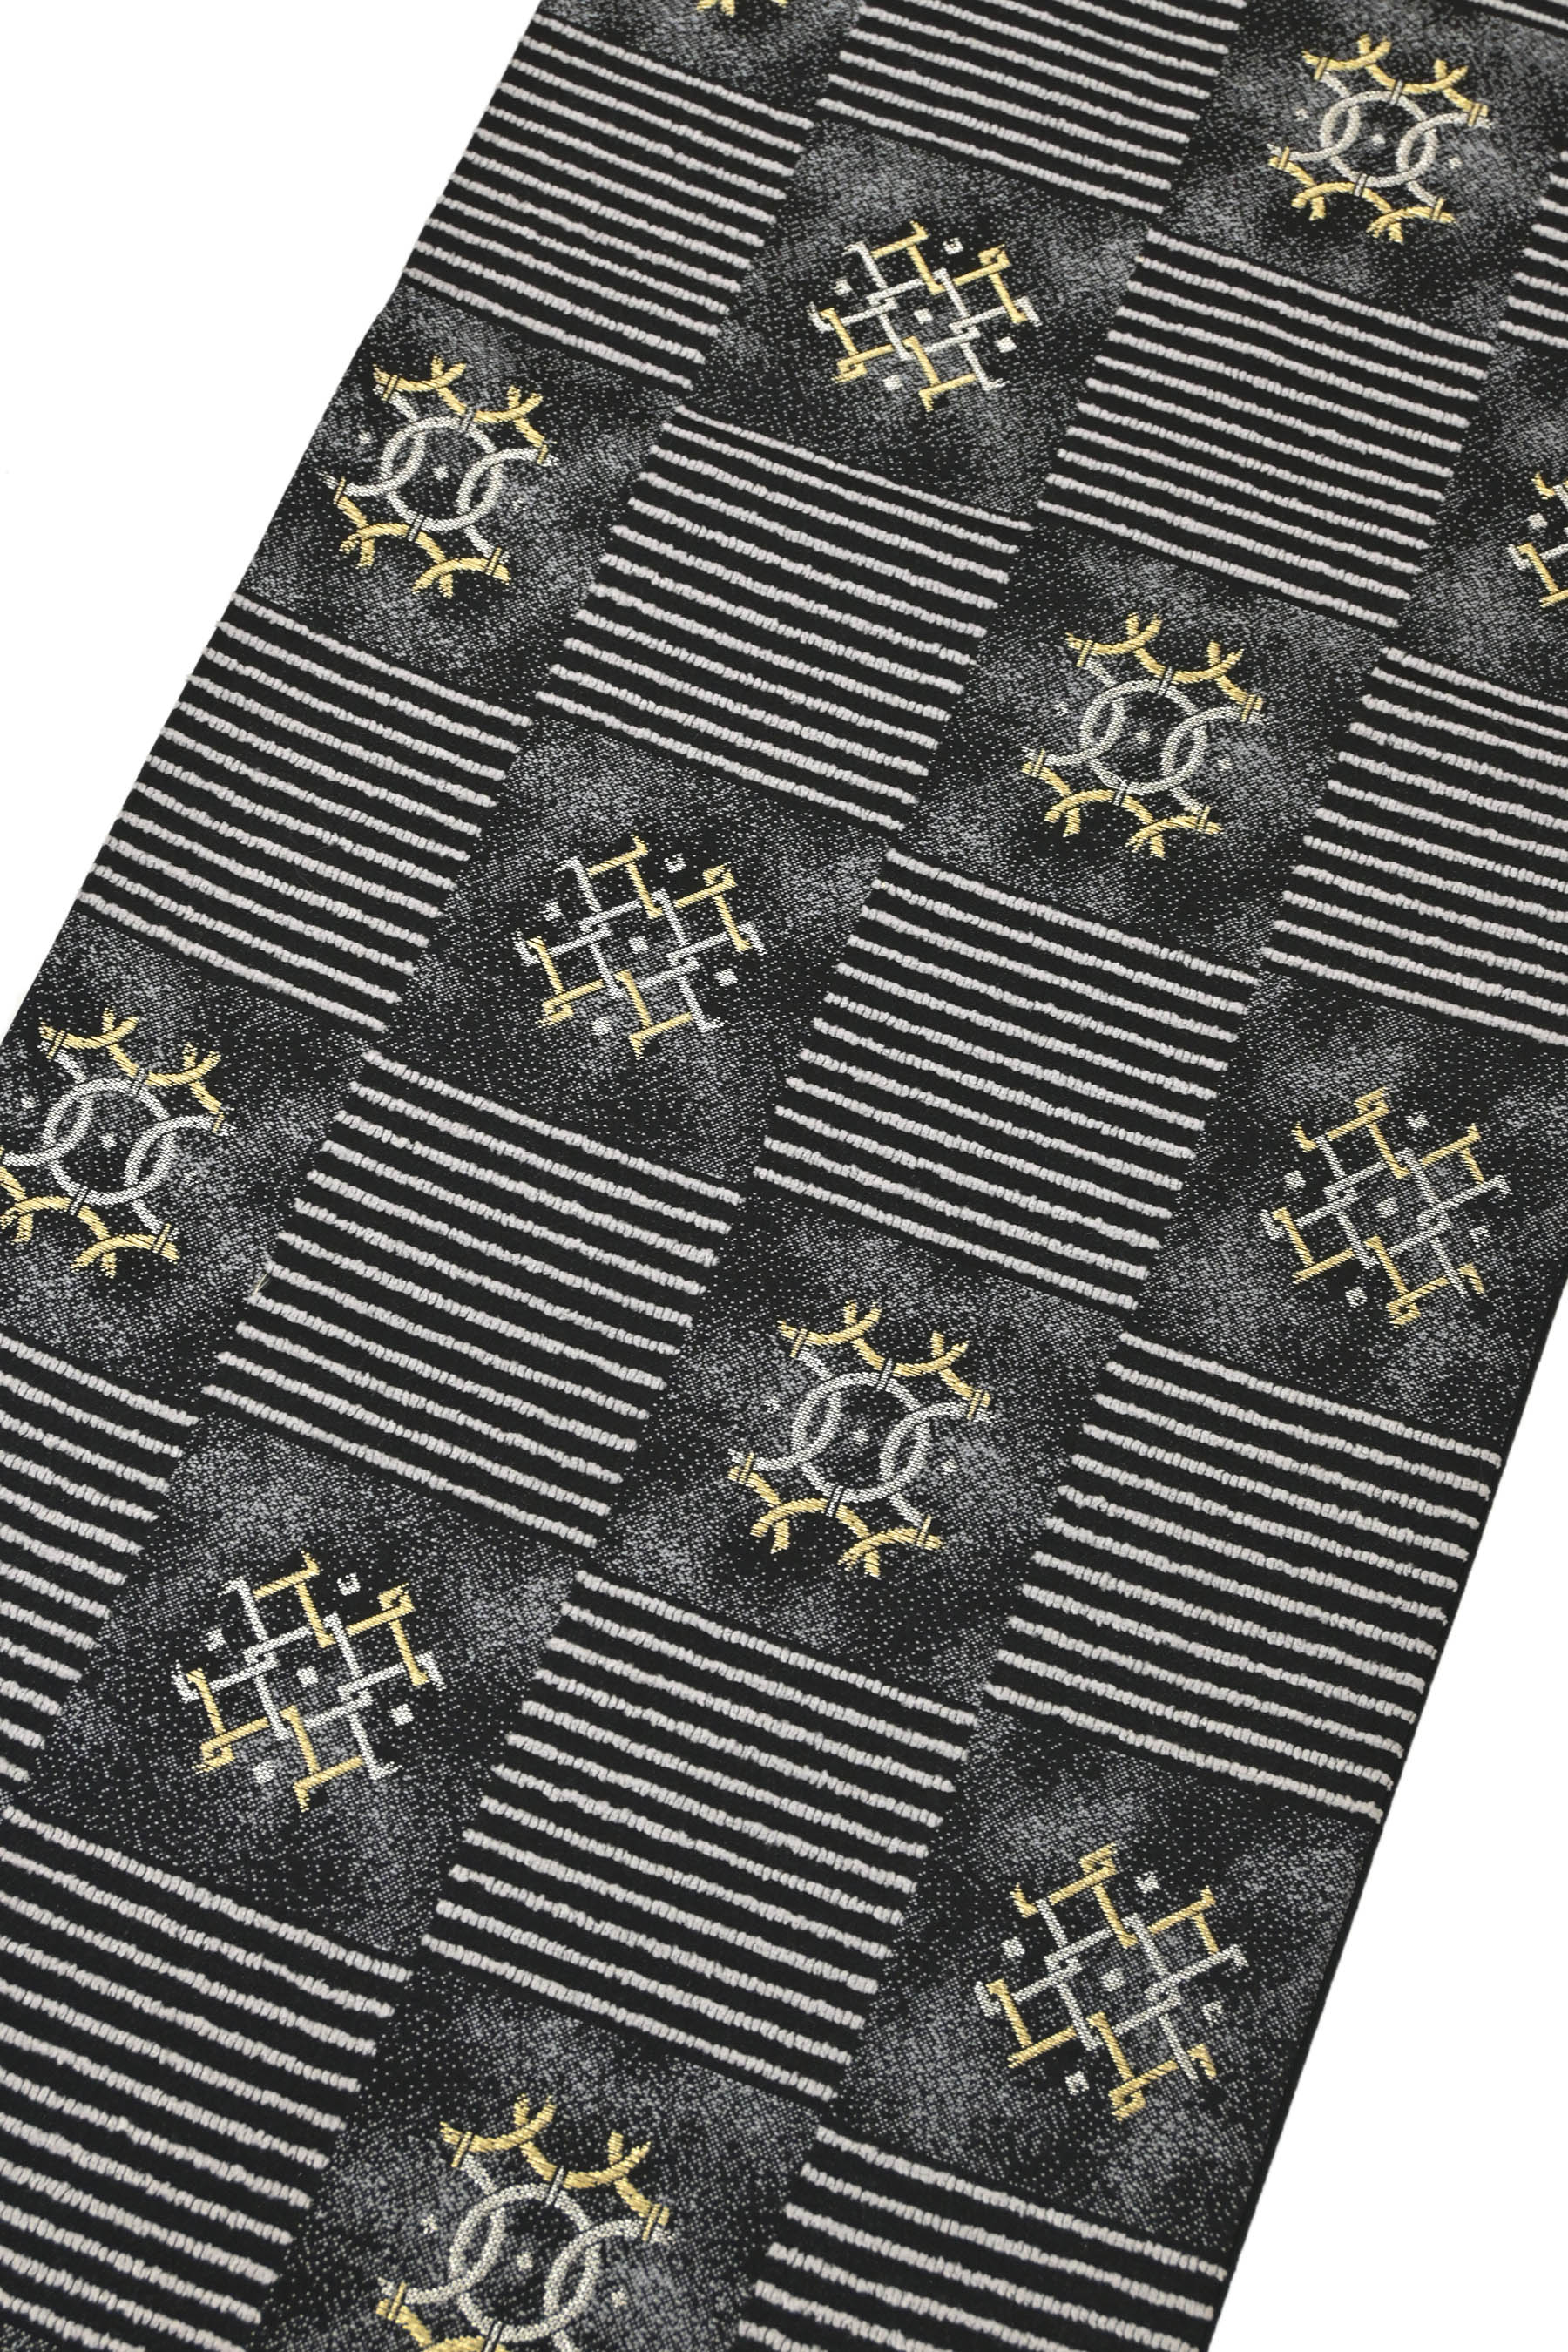 創作袋帯 モール糸使用 ≪御仕立て上がり・中古品≫ 「抽象市松紋」 織の風合い豊かに！